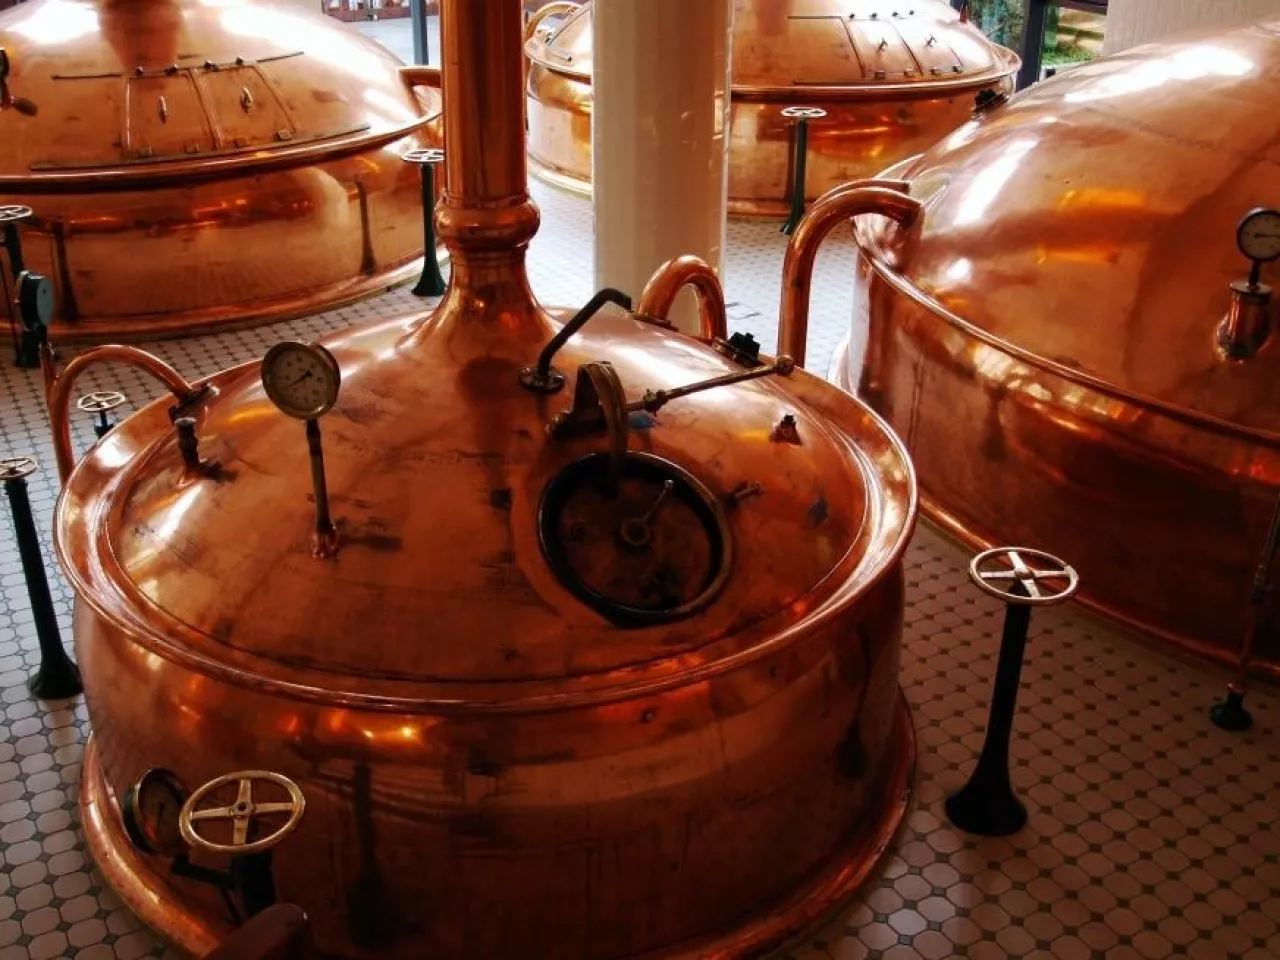 Rosyjscy producenci piwa chcą podwyższenia cła na importowane piwo (fot. pixabay)